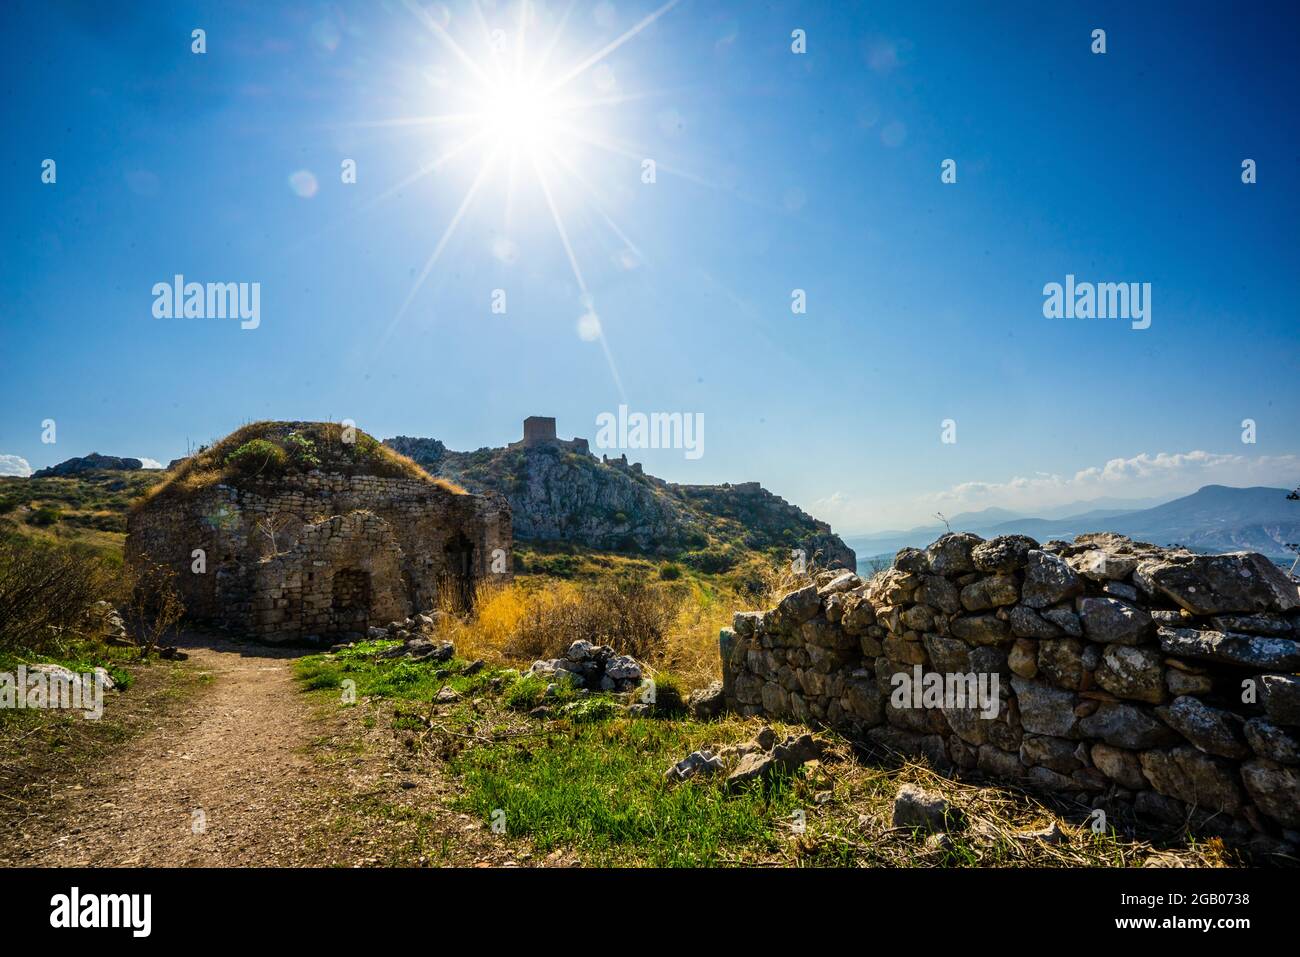 Acrocorinthe, forteresse de la haute Corinthe, l'acropole de la Corinthe antique - Péloponnes Grèce Banque D'Images